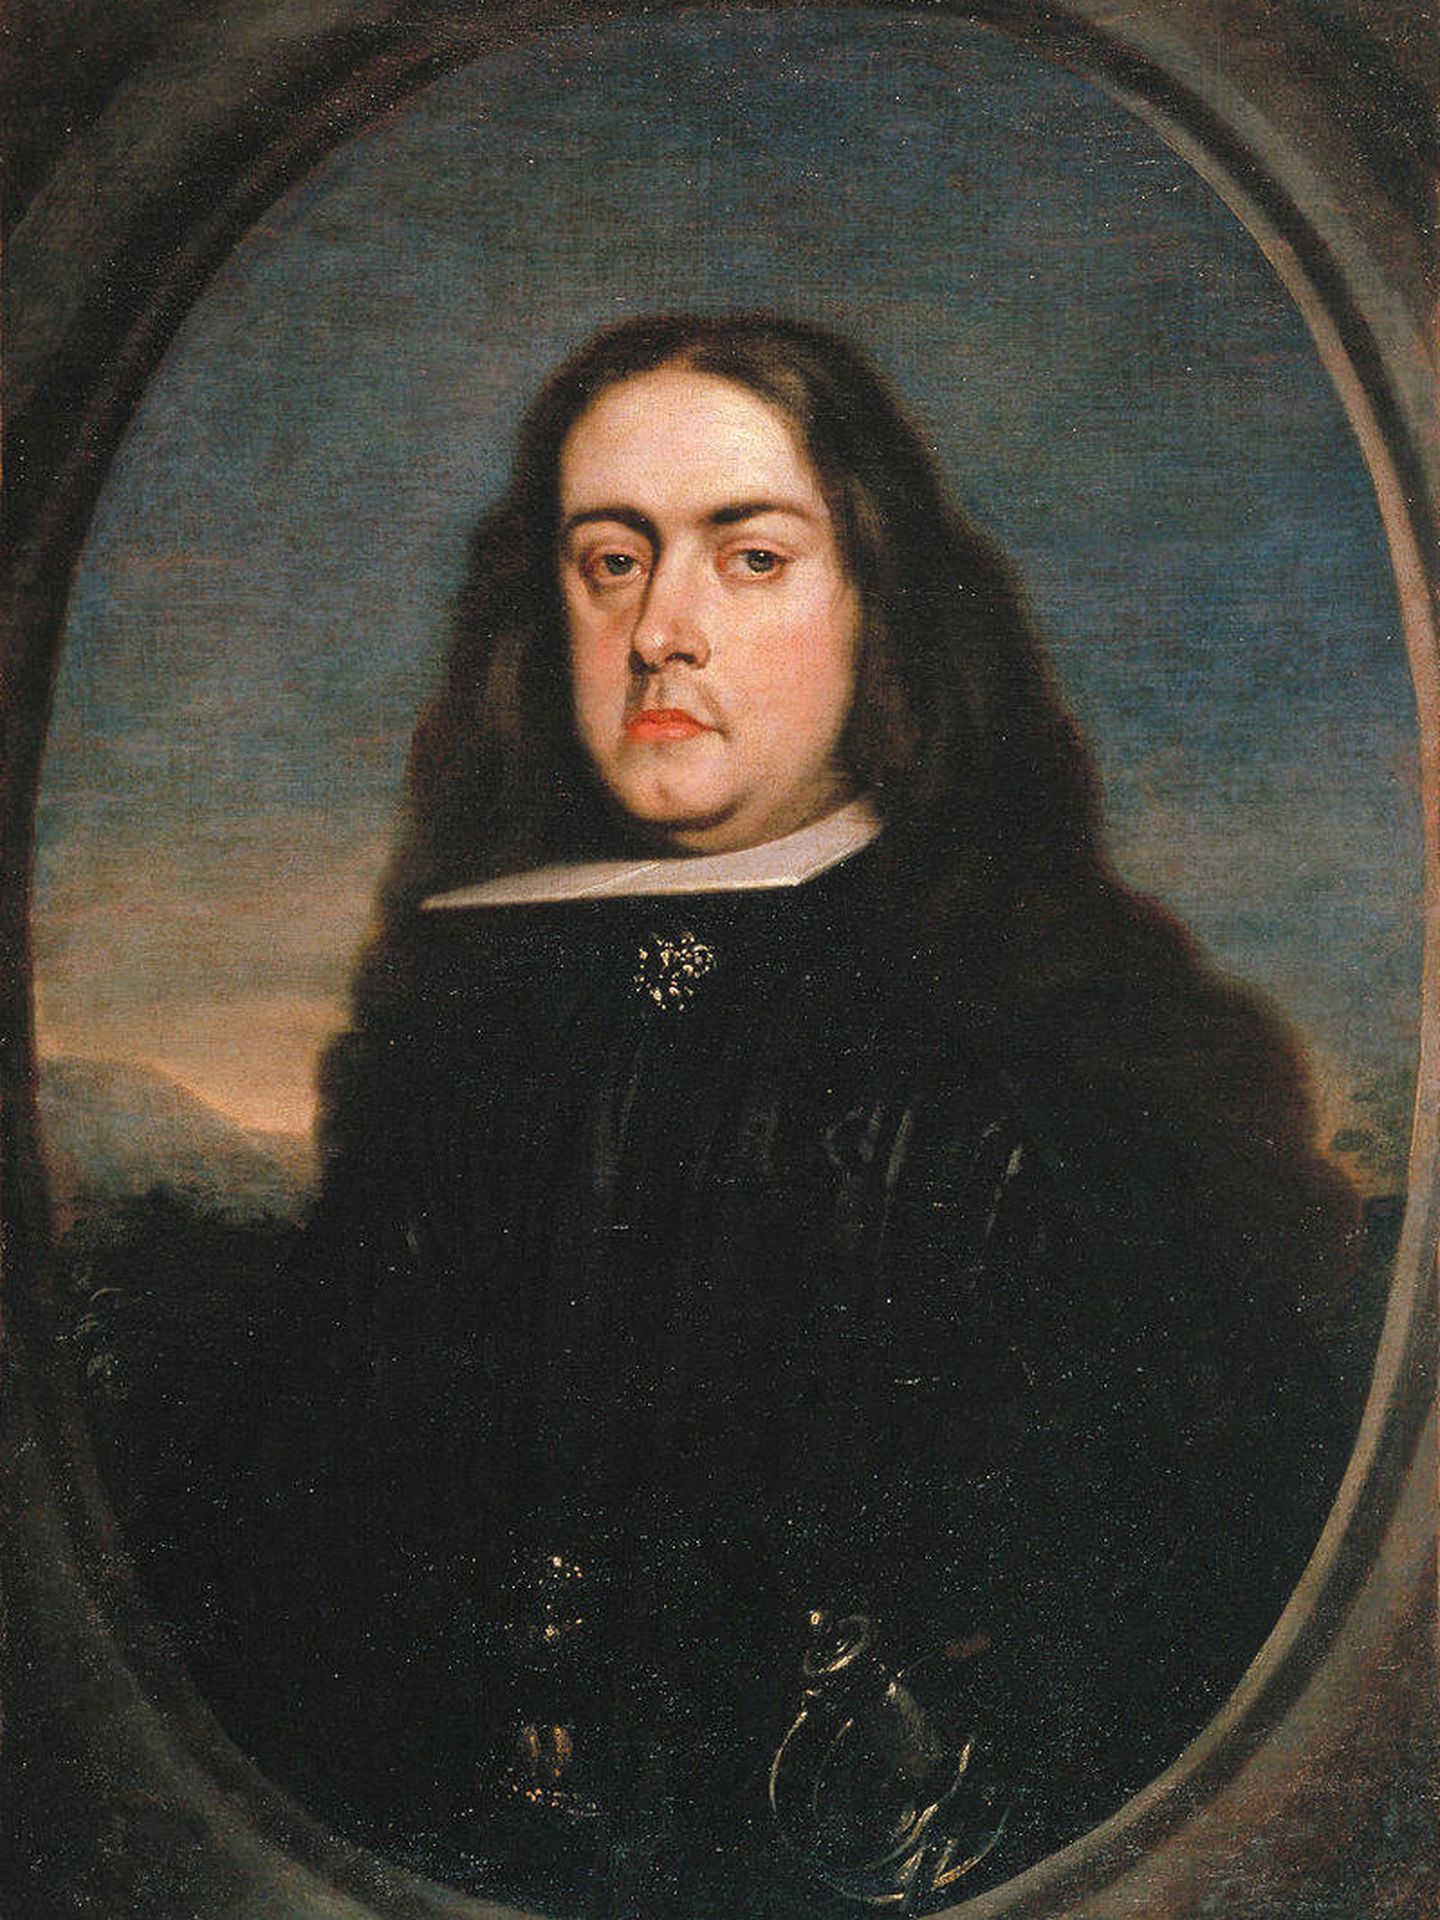 Juan de la Cerda, retratado por Claudio Coello.